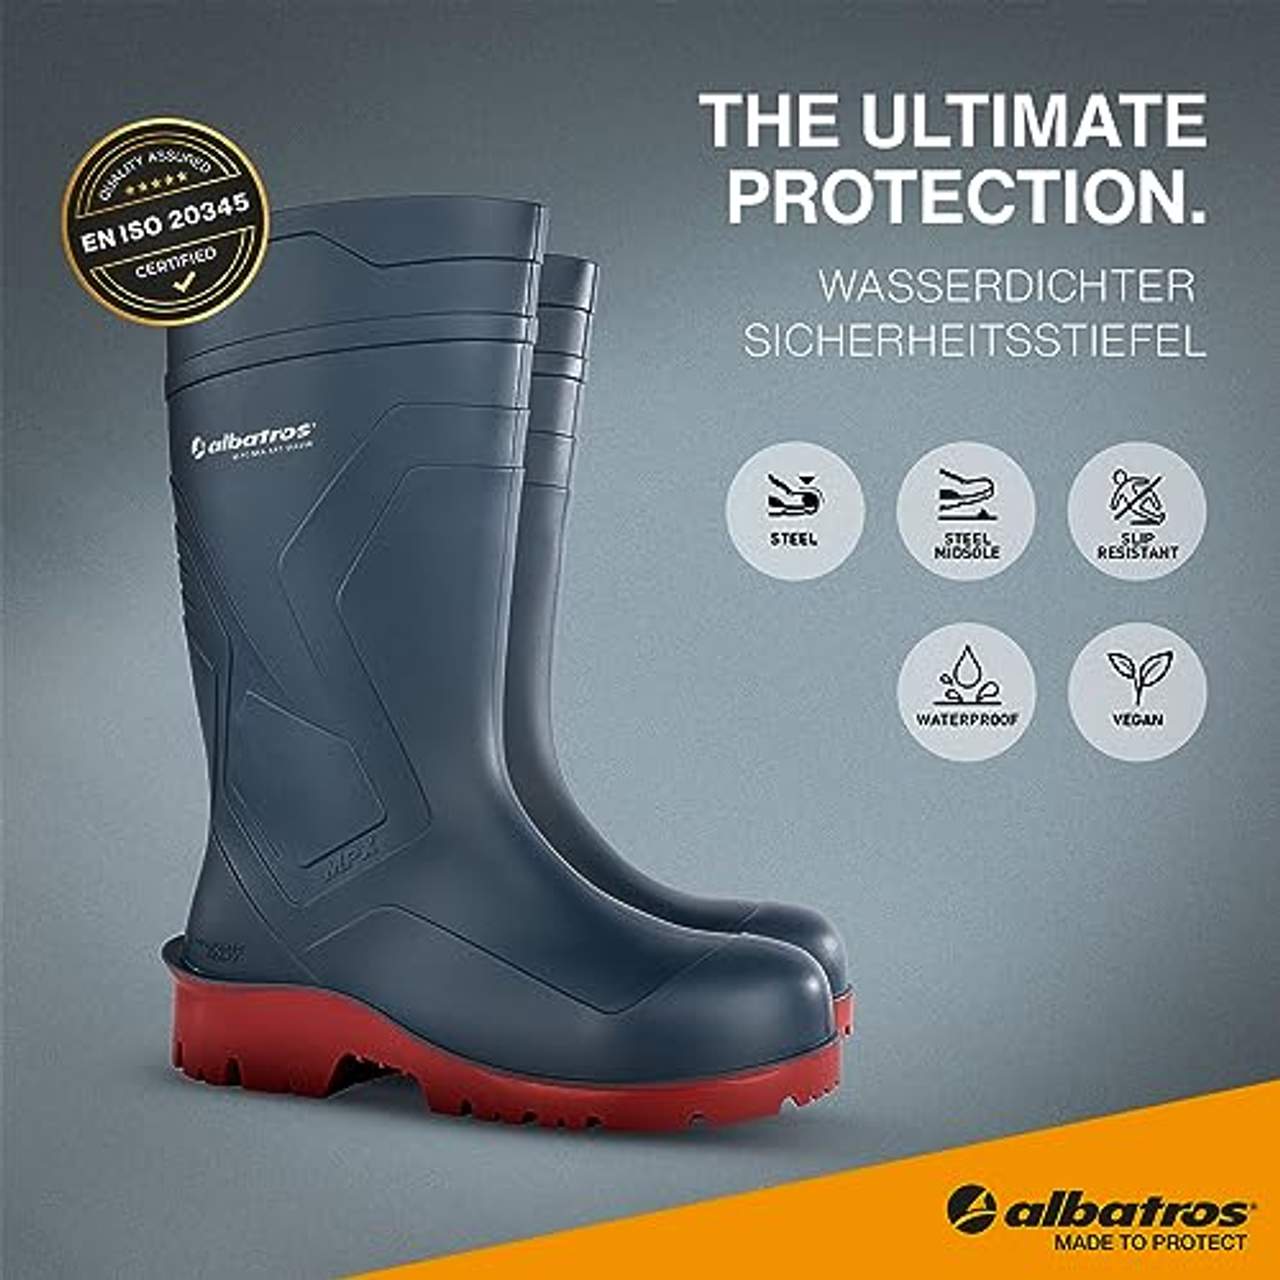 ALBATROS Protector Plus Yellow High Sicherheitsstiefel Gr